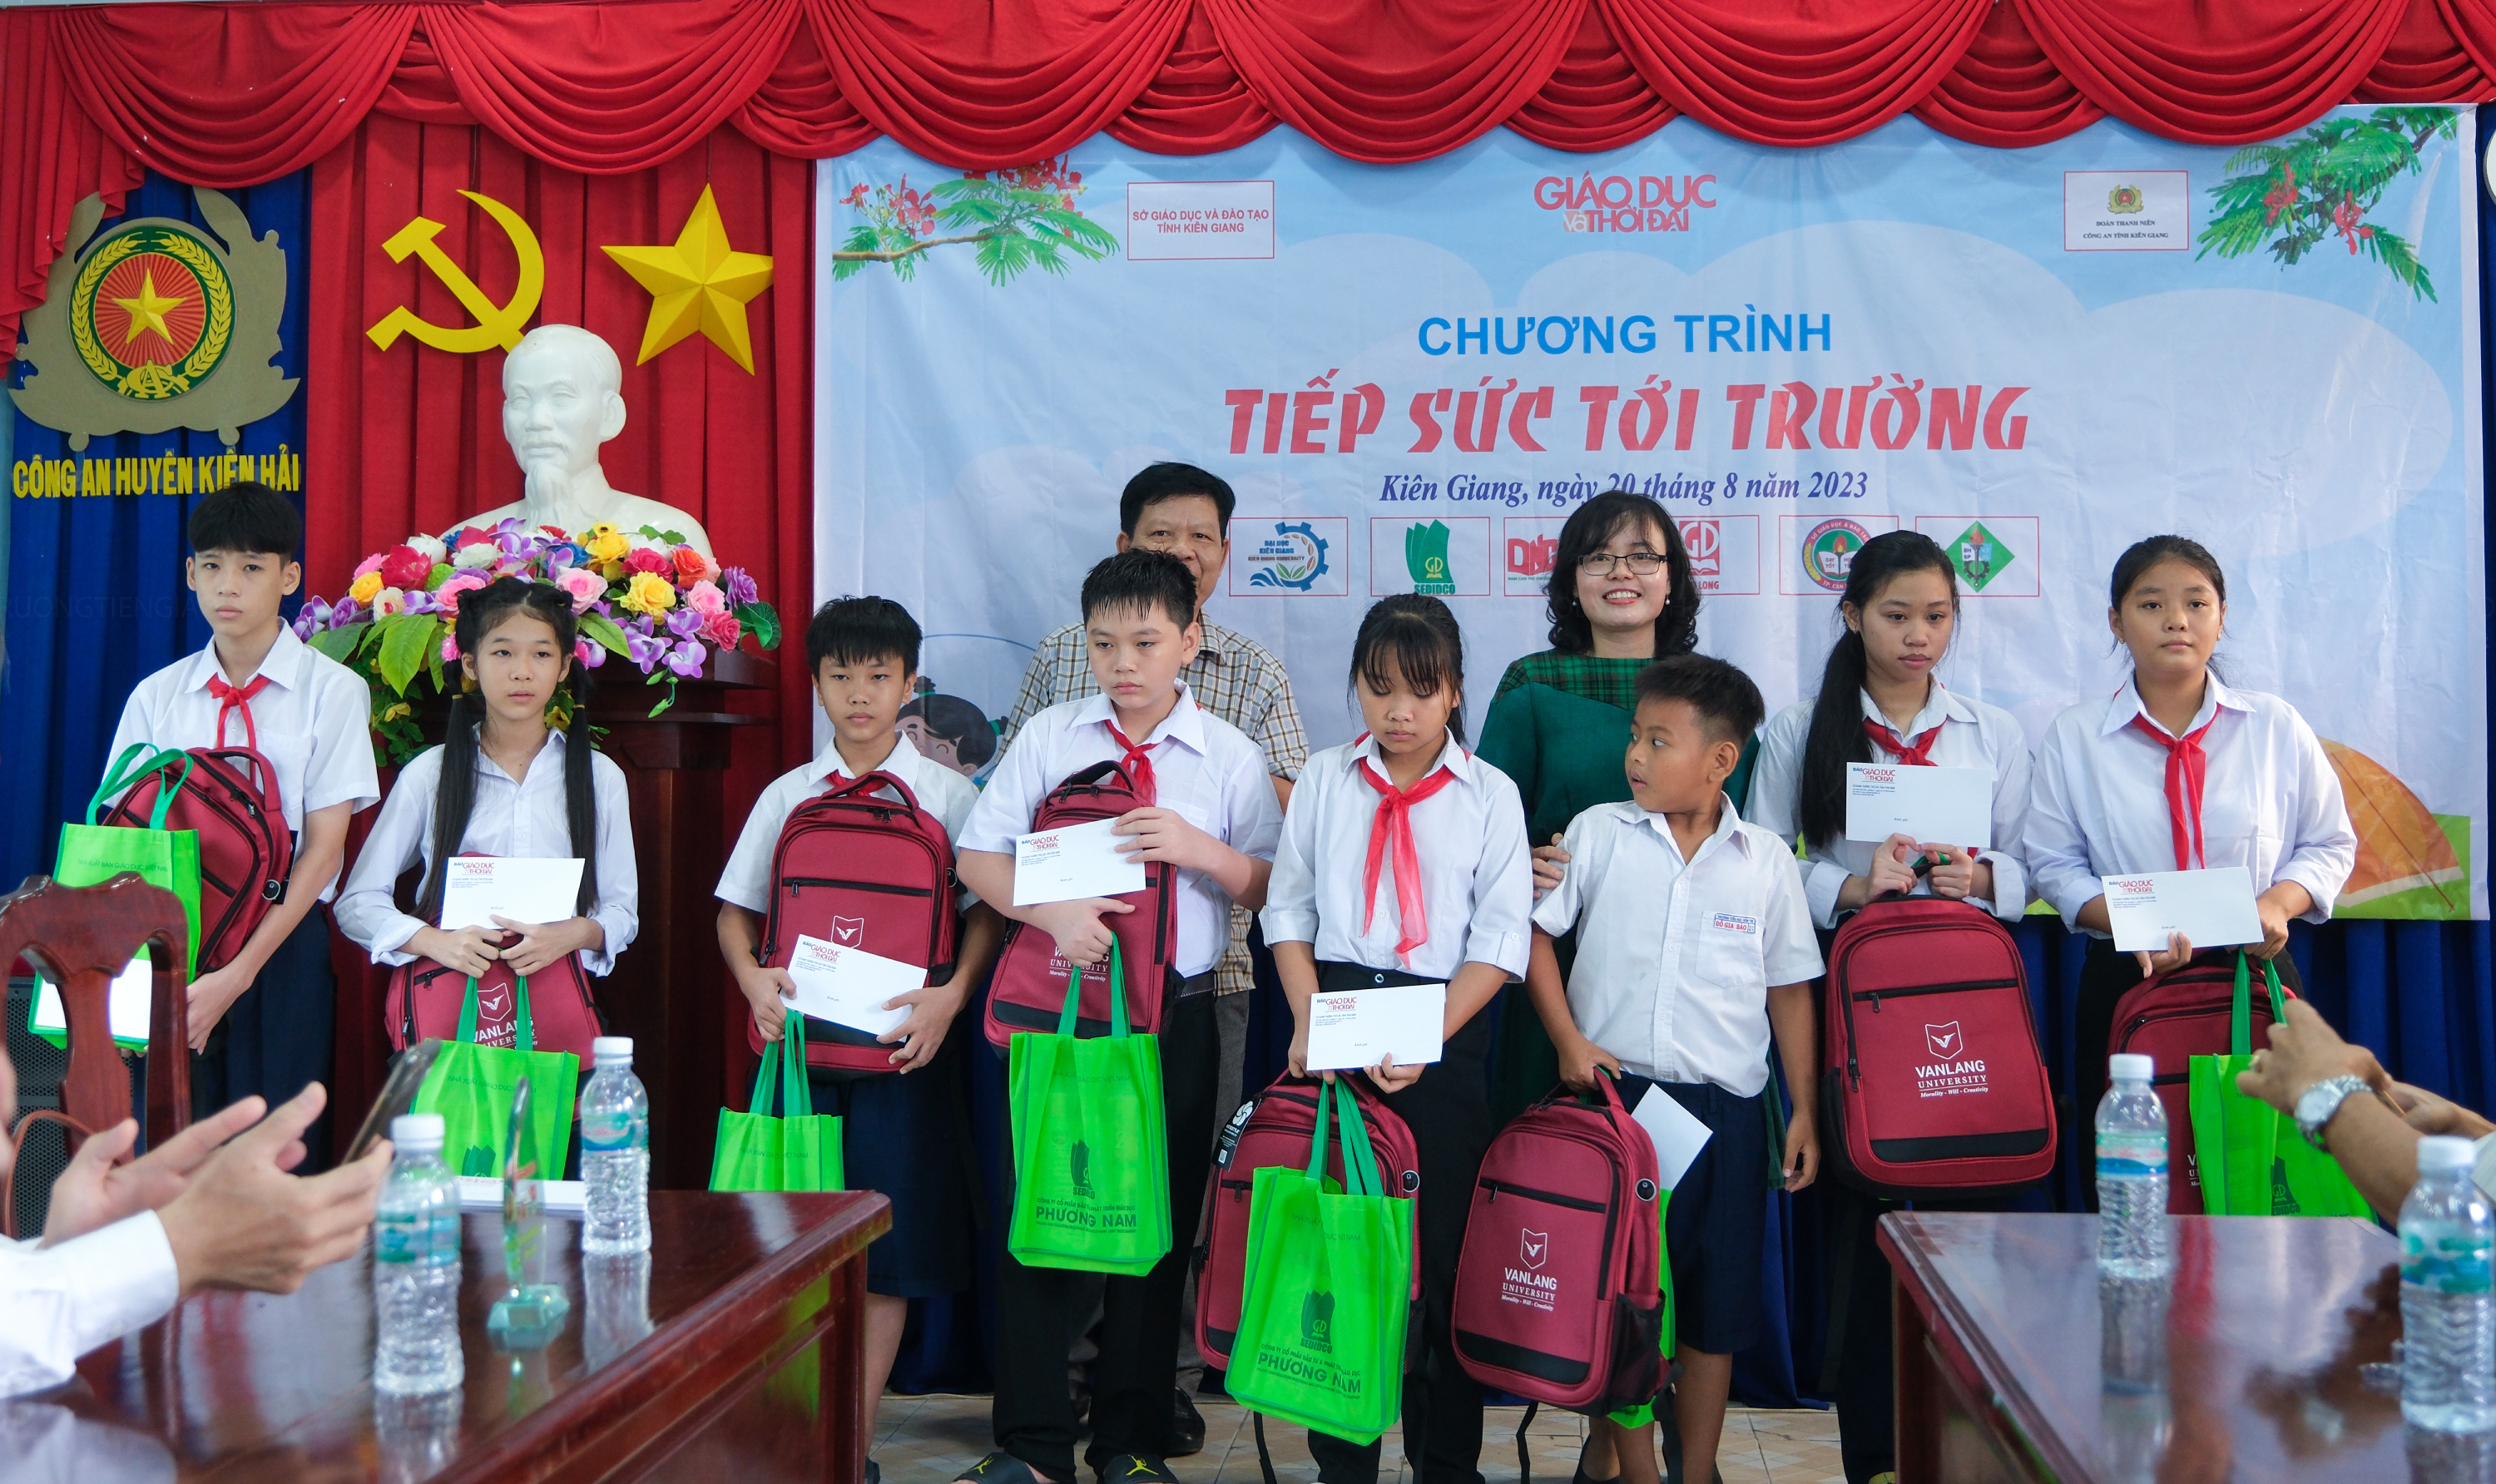 Chương trình 'Tiếp sức đến trường' đến với học sinh Kiên Giang ảnh 11